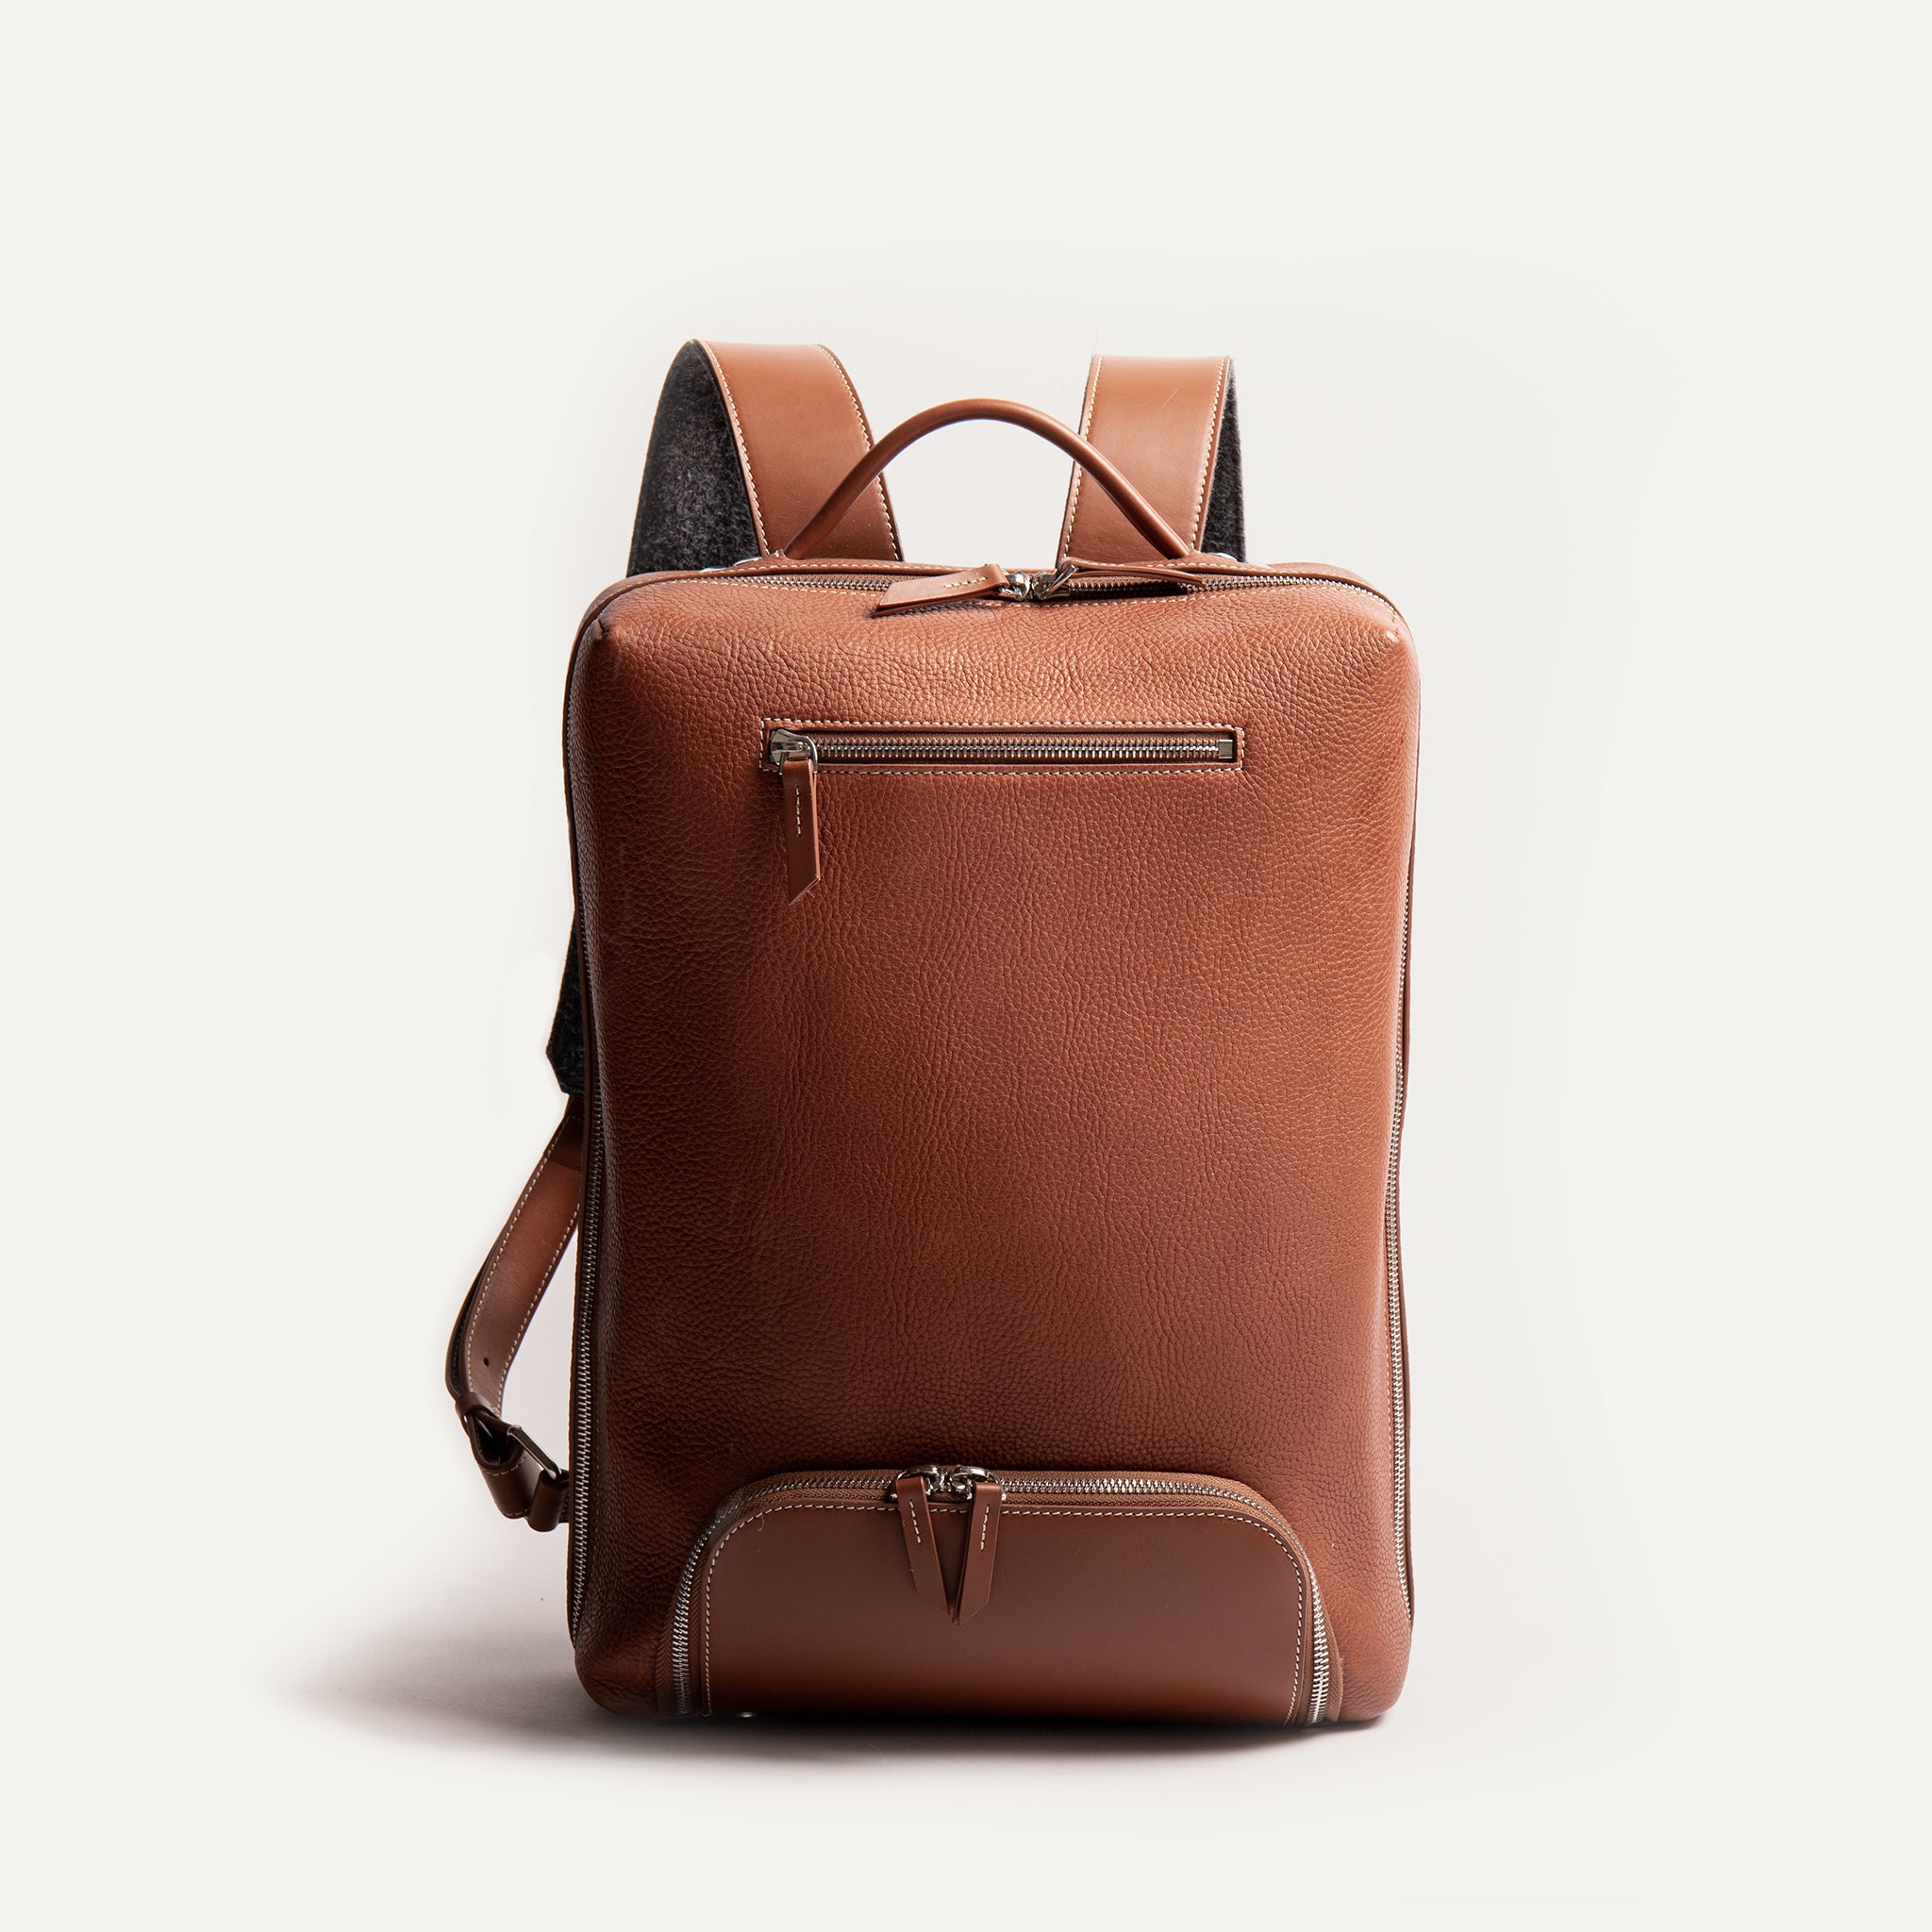 Le sac à dos Giani en cuir grainé pour homme propose un format compact et une poche avant pour ranger ses câbles et autres accessoires de bureau.